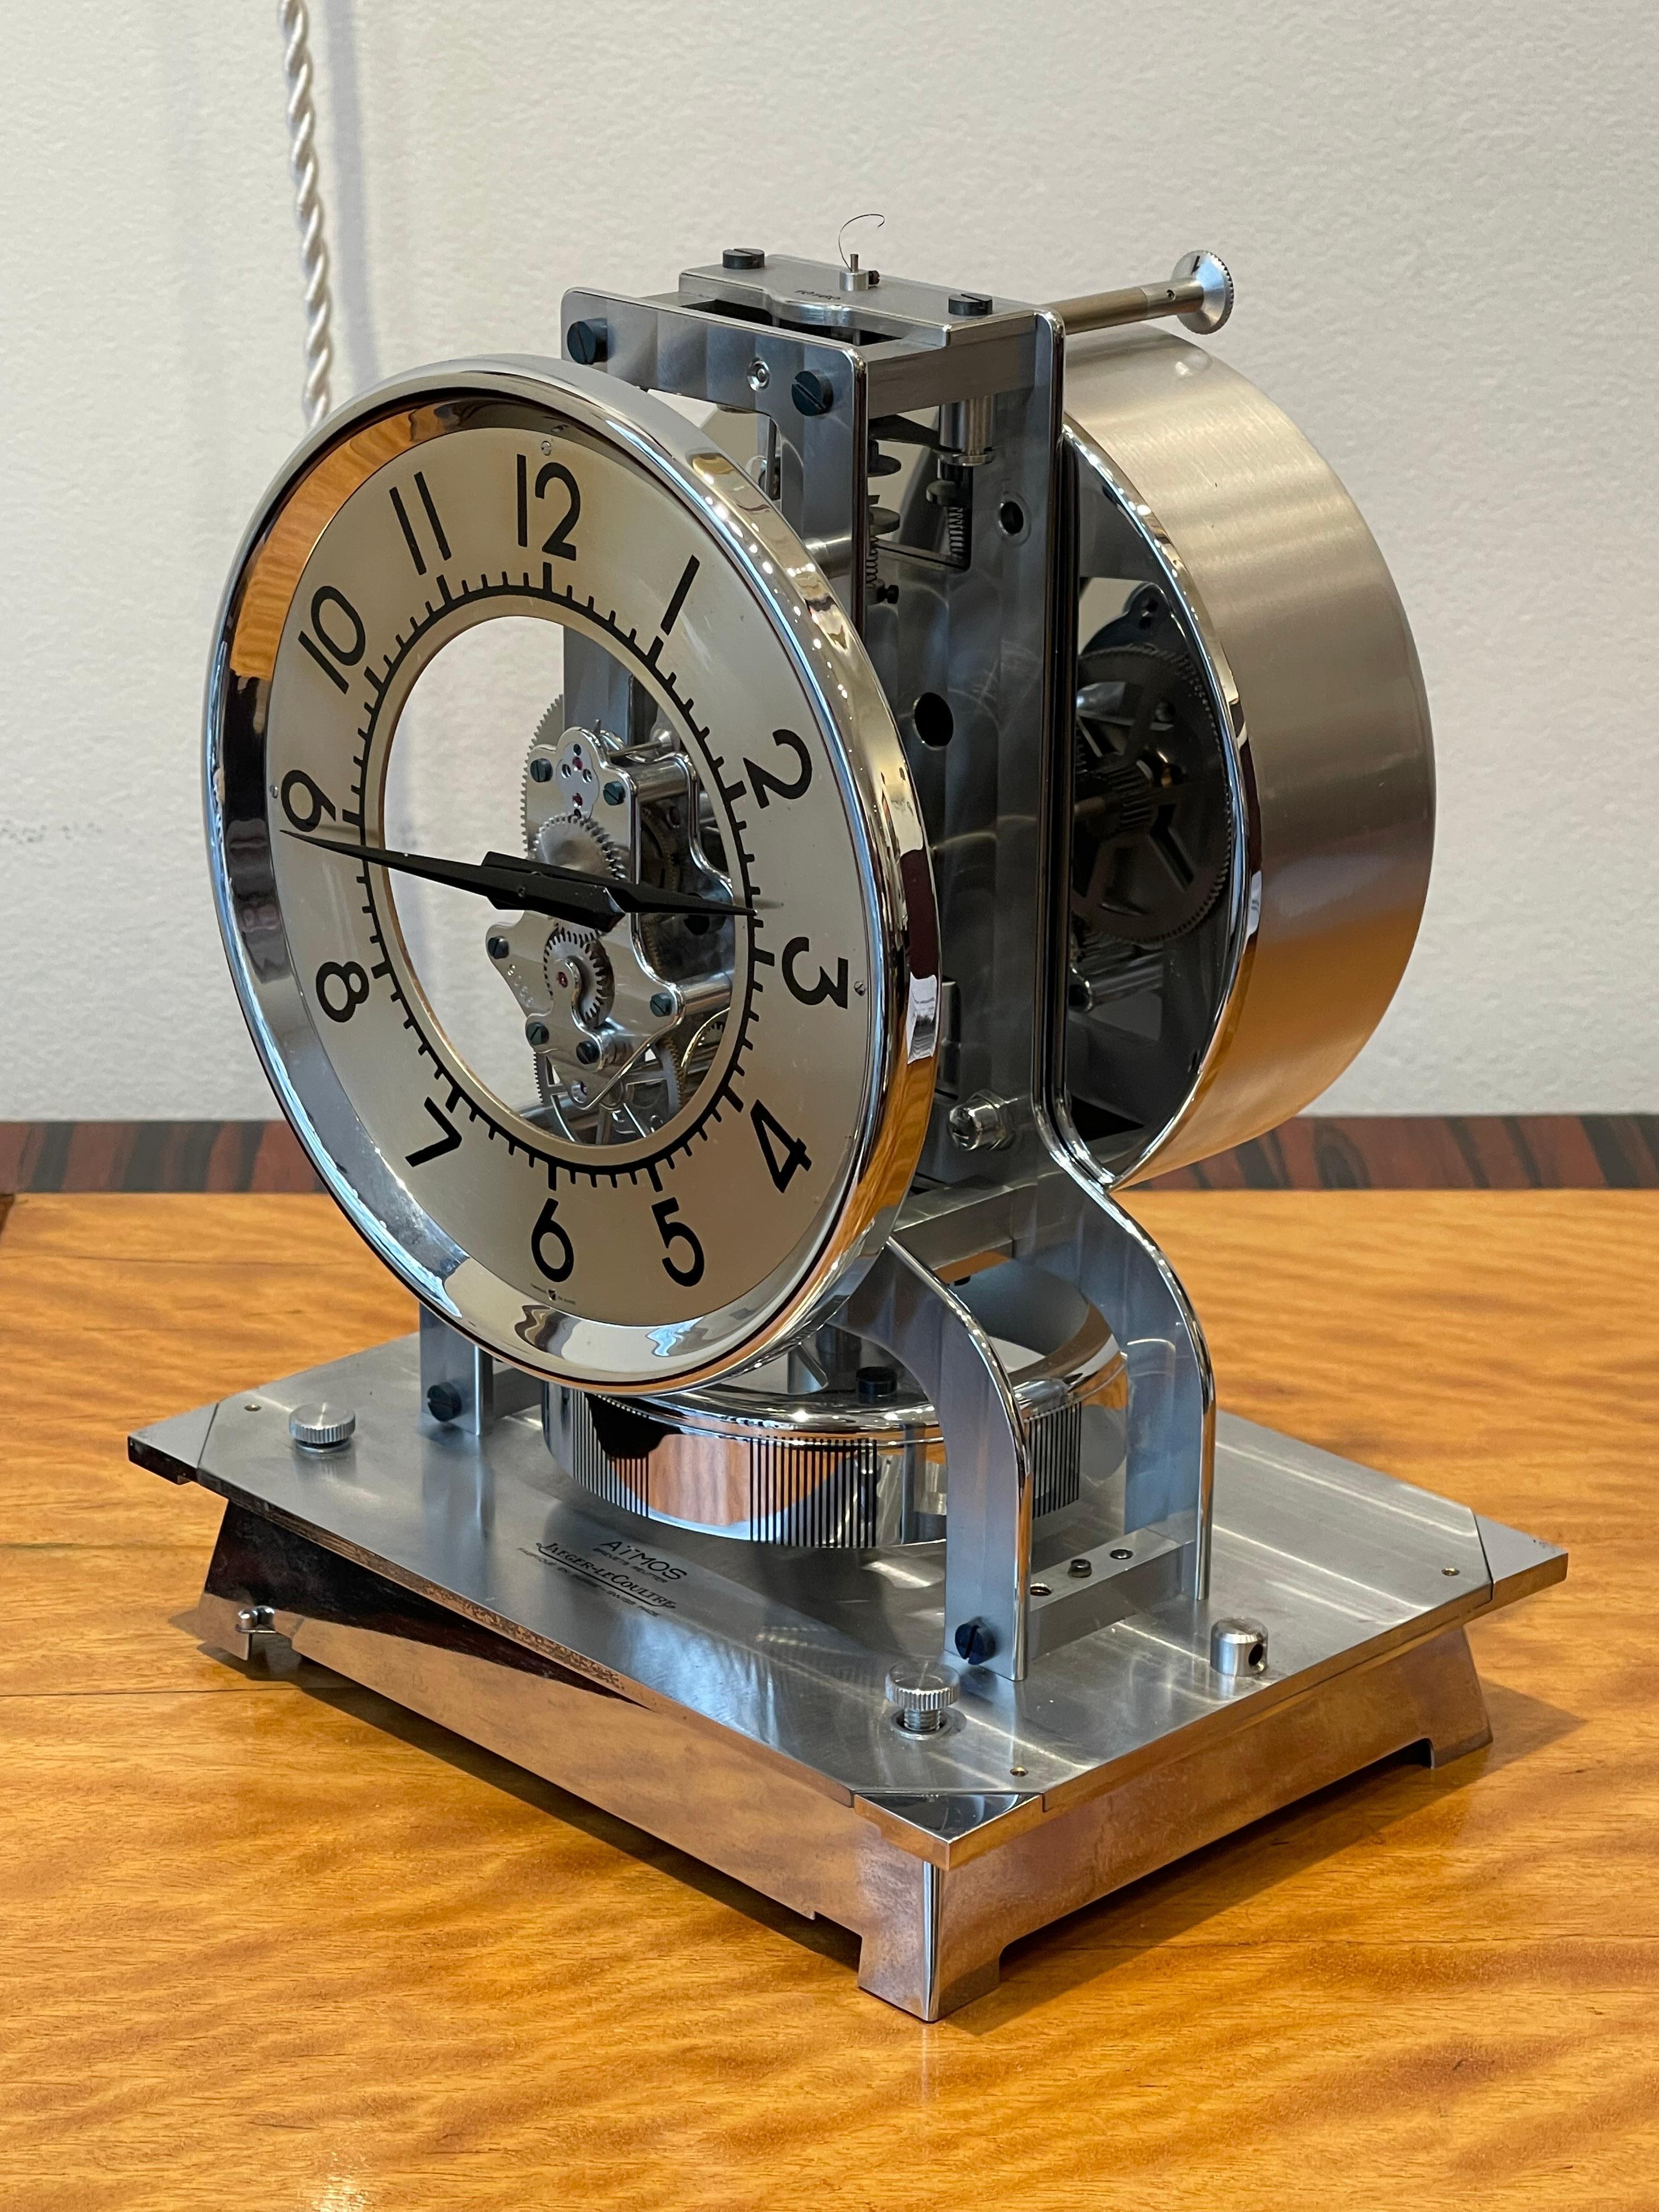 Außergewöhnlich  Atmos Tischuhr von Jaeger-LeCoultre, um 1940, Schweiz

Ewige Tischuhr aus verchromtem Metall. Die Uhr steht auf einem verchromten Metallsockel, der von einem Holzwürfel bedeckt ist. Das Zifferblatt ist in der Mitte hohl und hat